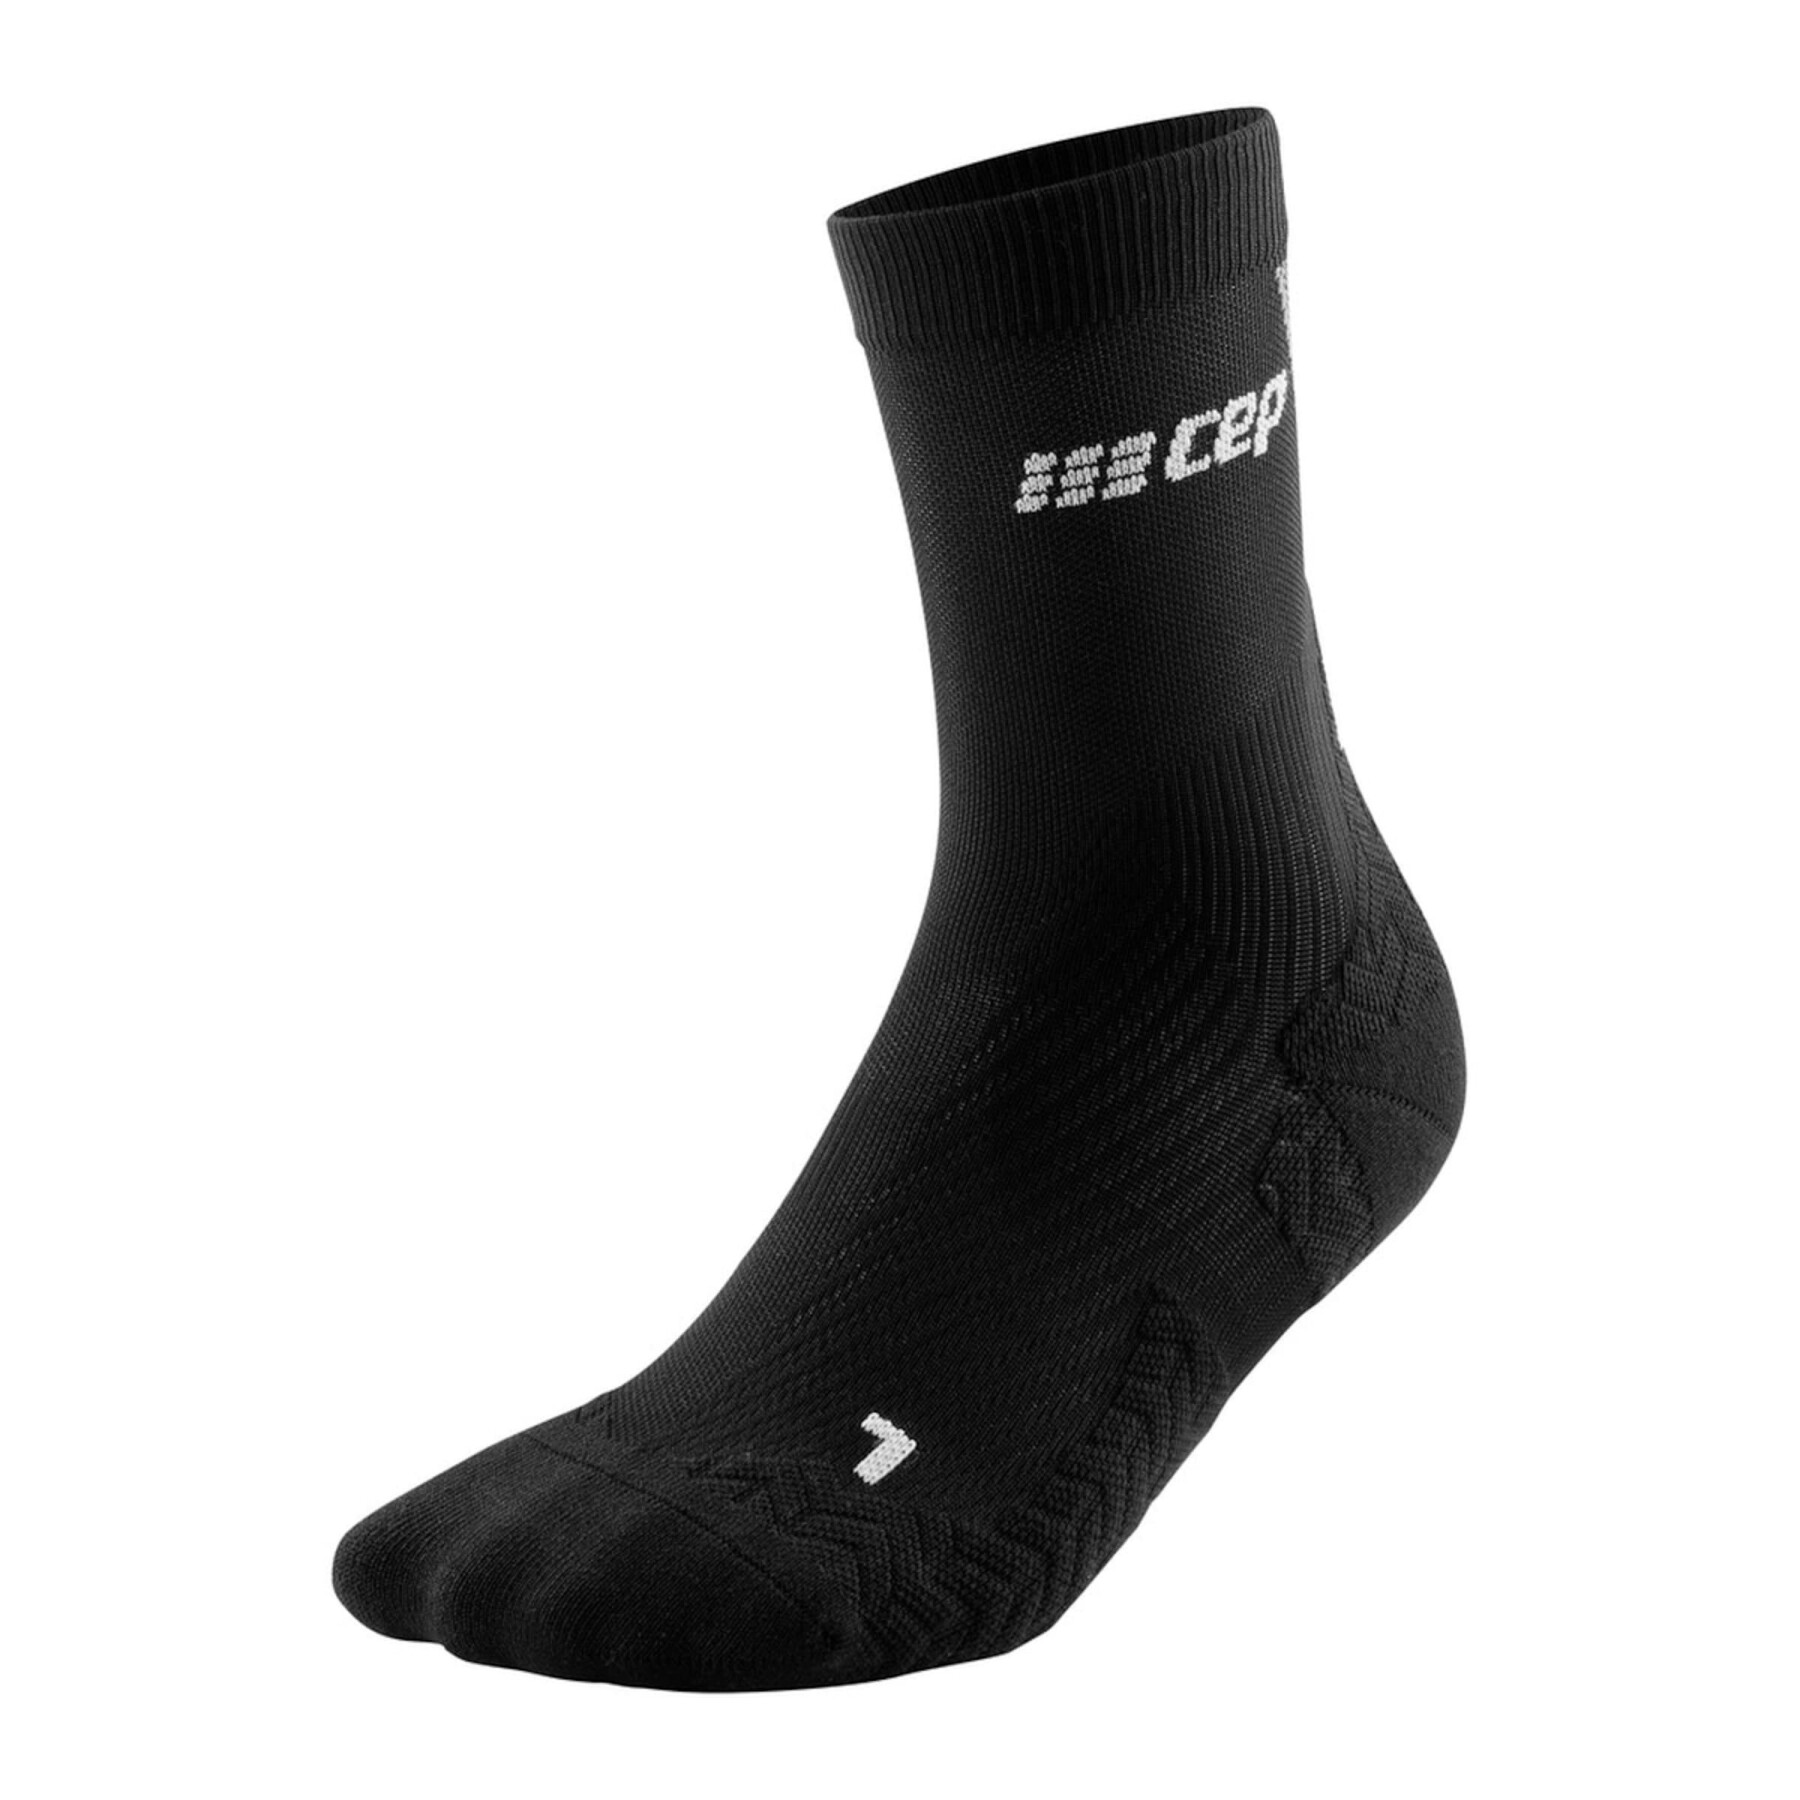 Kompressionssocken ultralight socks, mid cut v3 CEP Compression